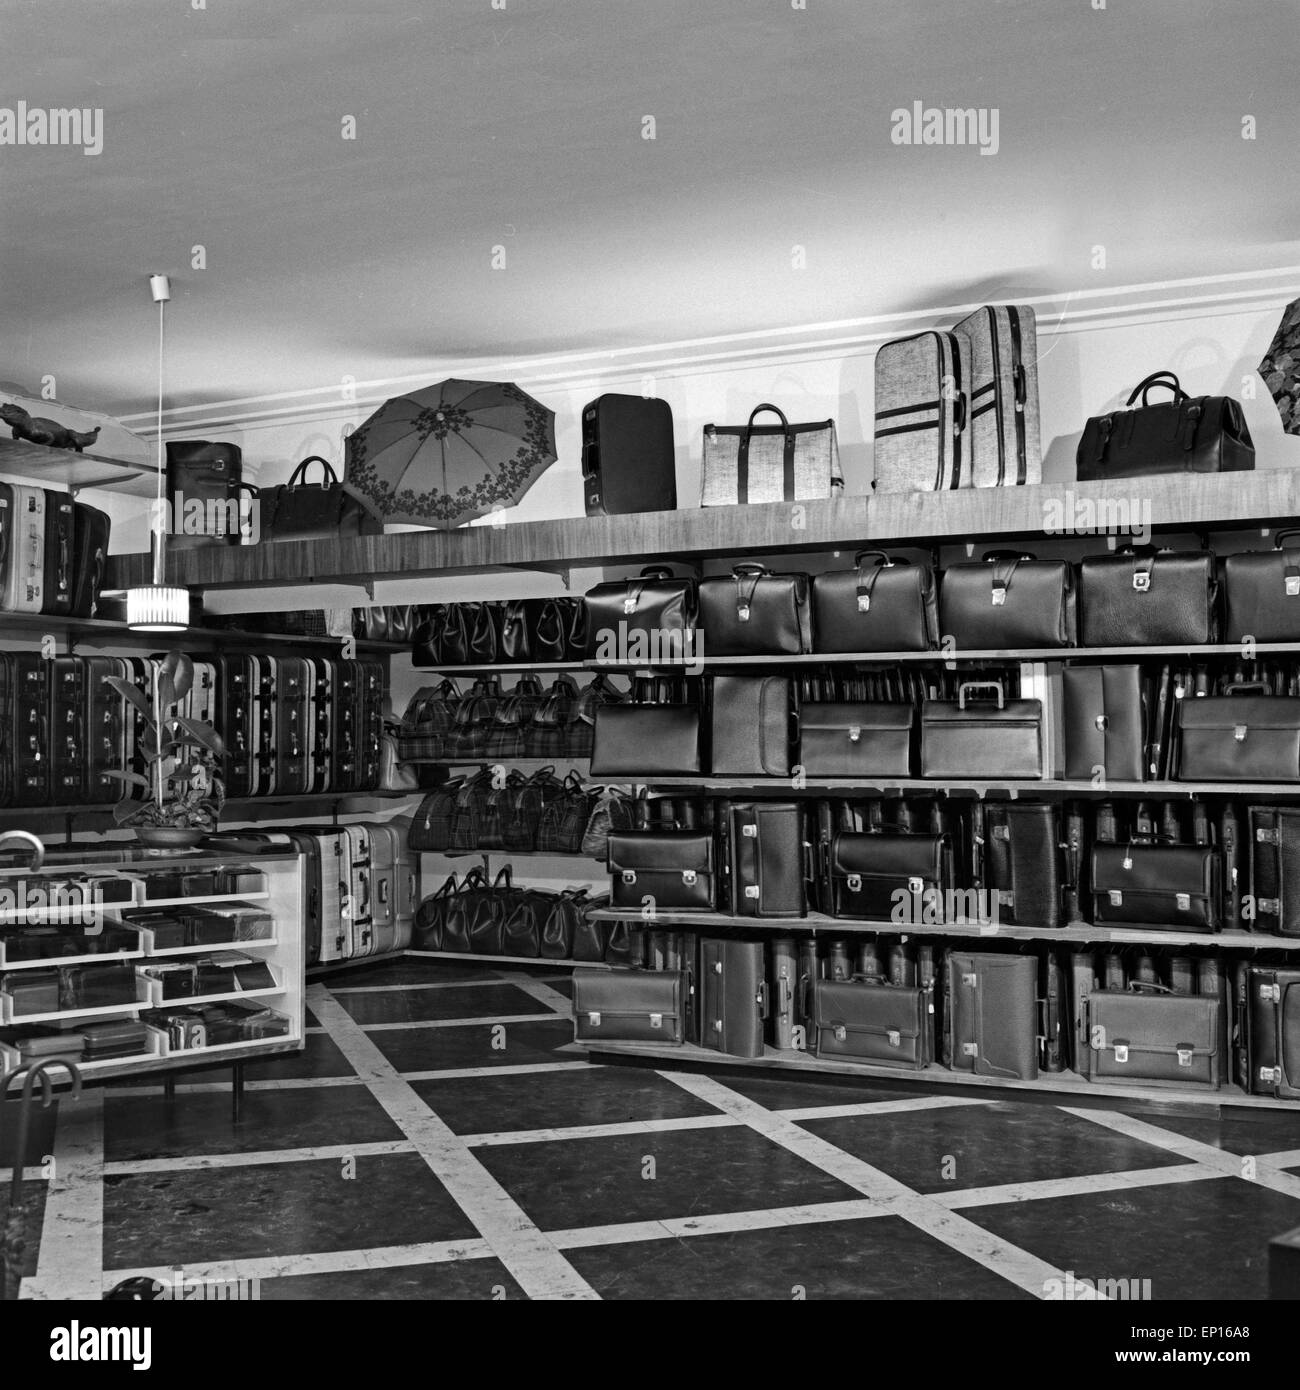 Sortiment in Einem Leder-Und Taschengeschäft in Hamburg, Deutschland, 1960er Jahre. Regale in einem Leder und Tasche Shop ich gefüllt Stockfoto